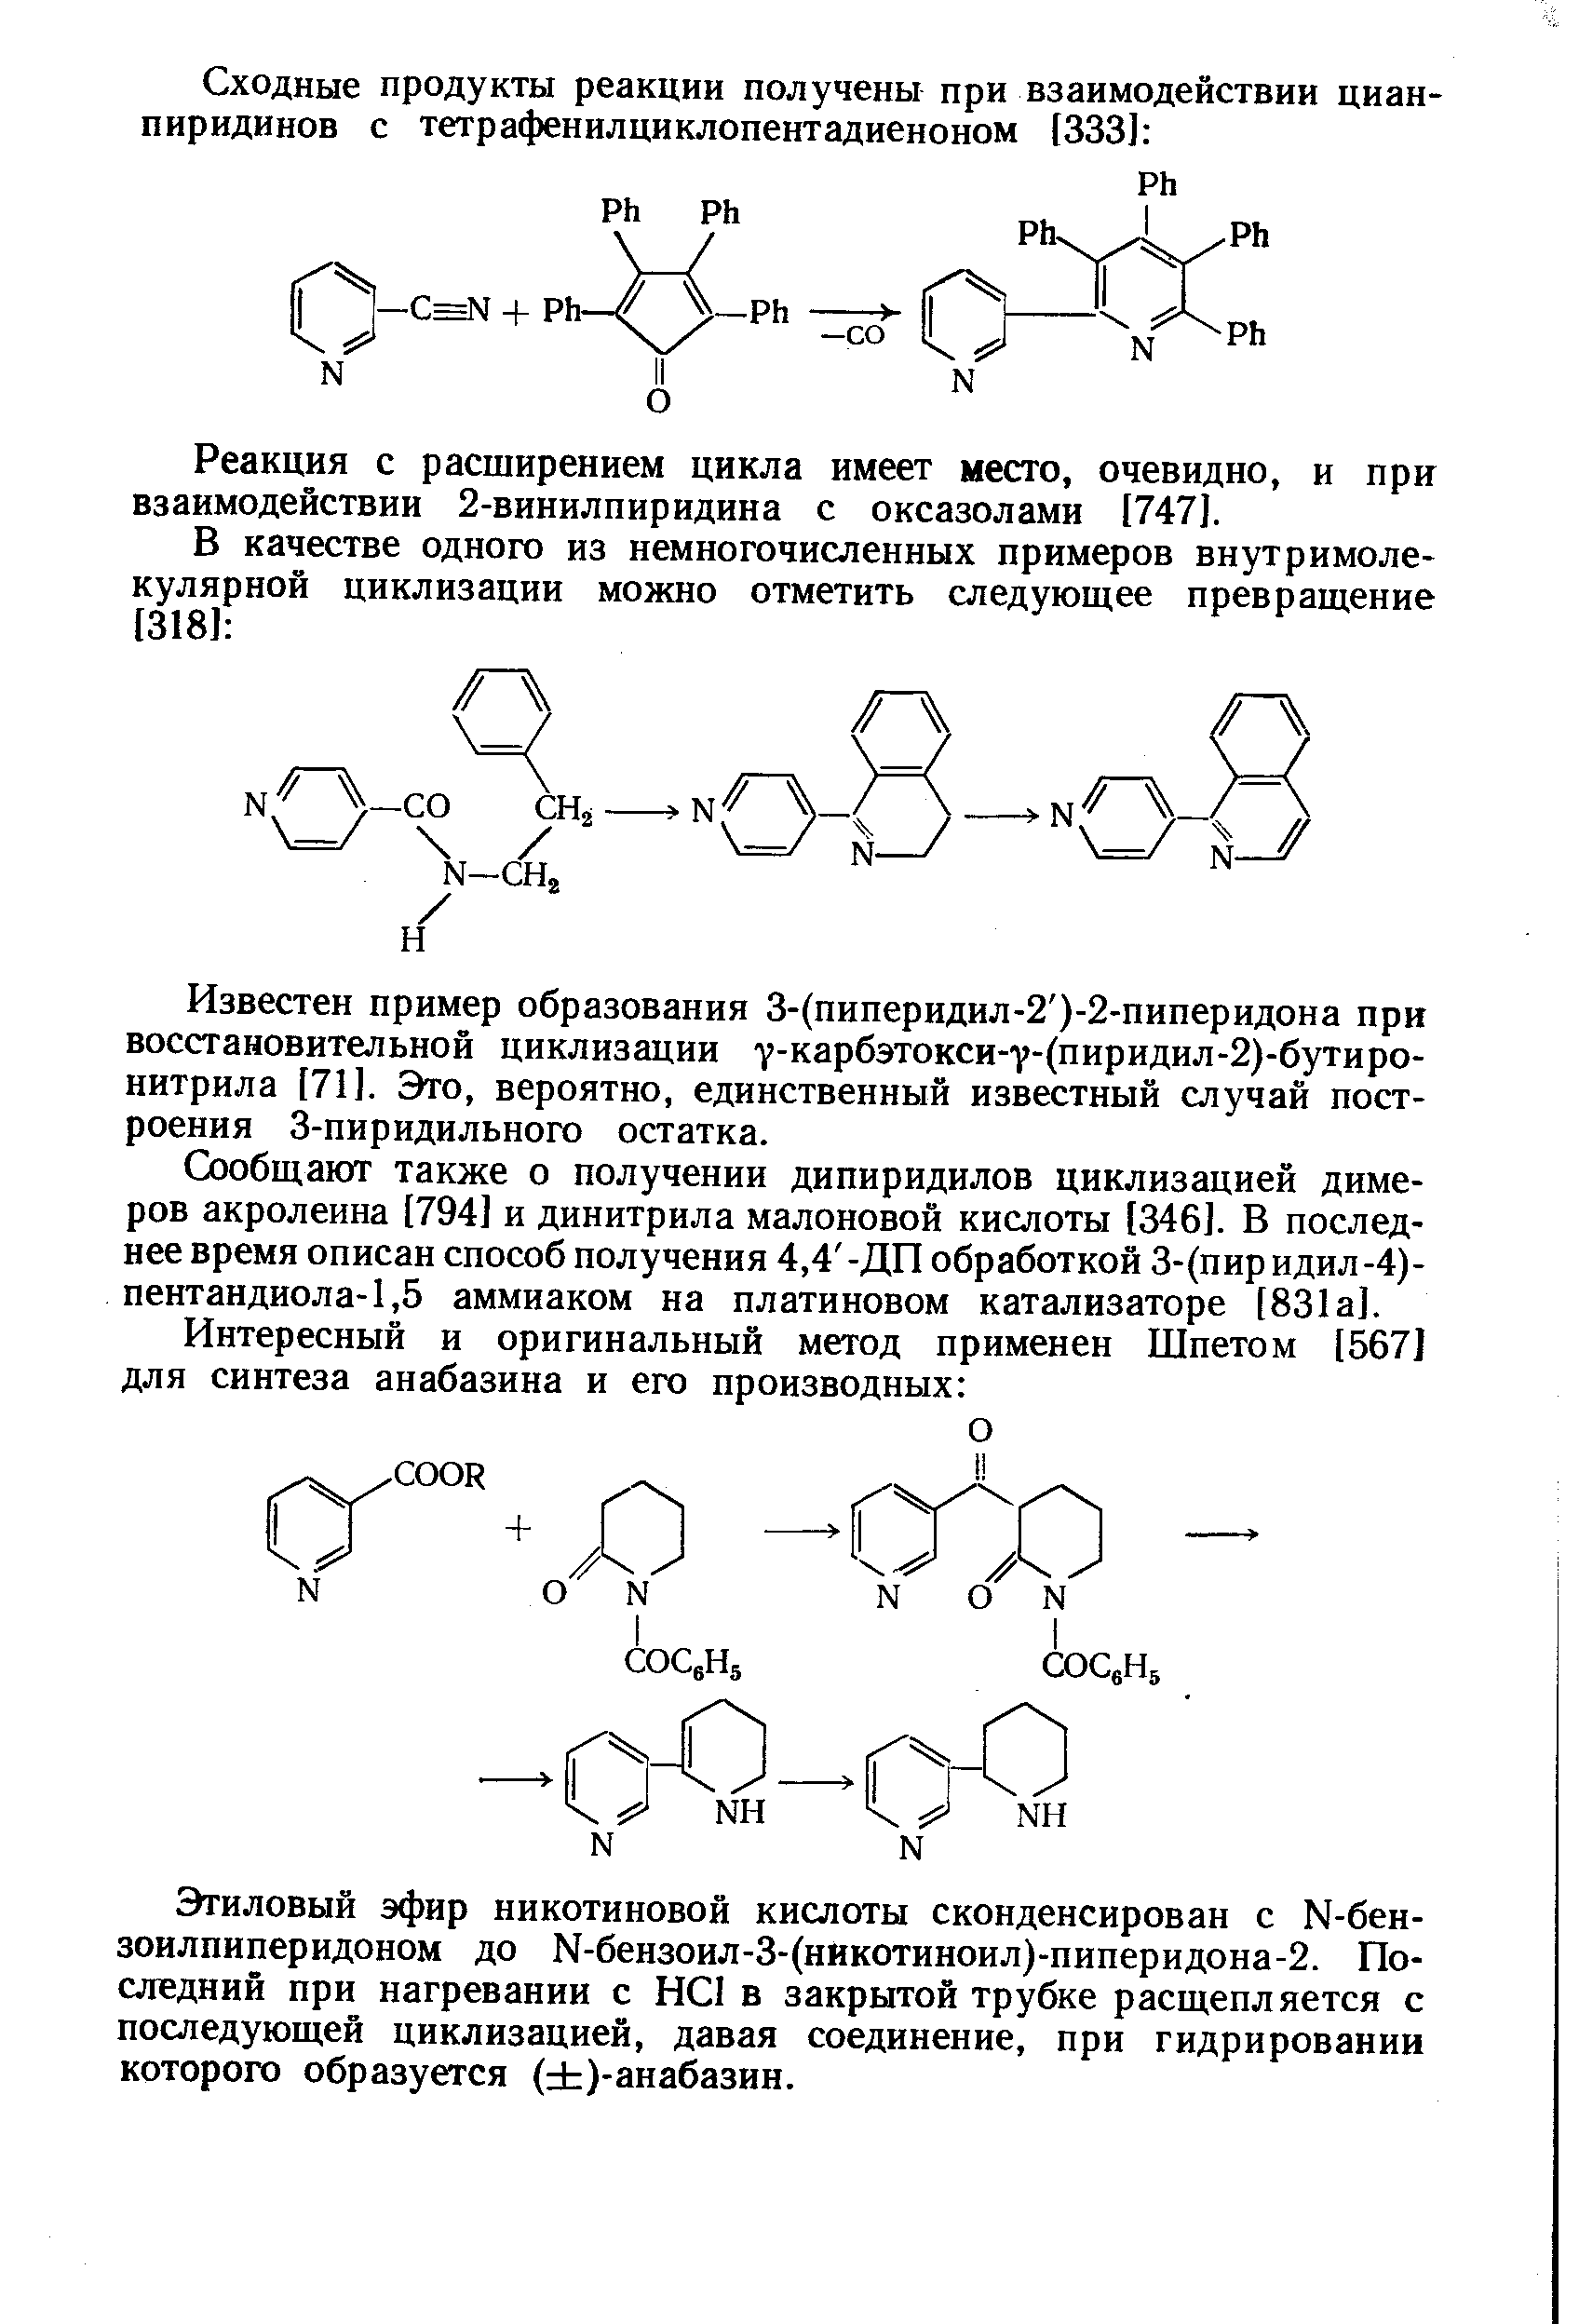 Реакция с расширением цикла имеет место, очевидно, и при взаимодействии 2-винилпиридина с оксазолами [747].